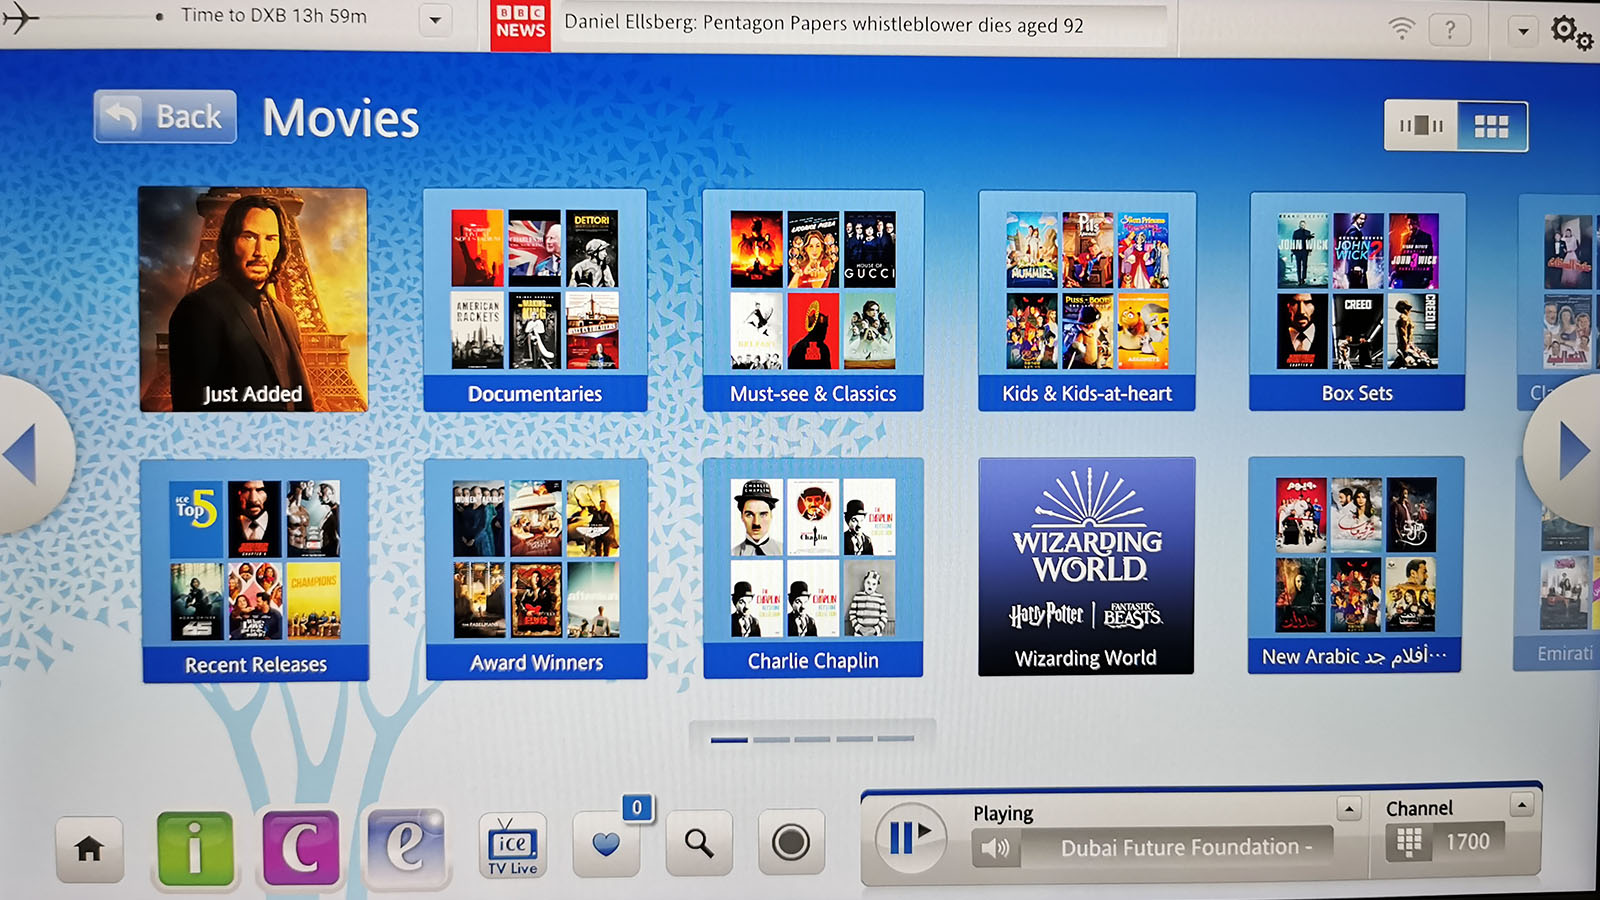 Entertainment content in Emirates Airbus A380 Premium Economy